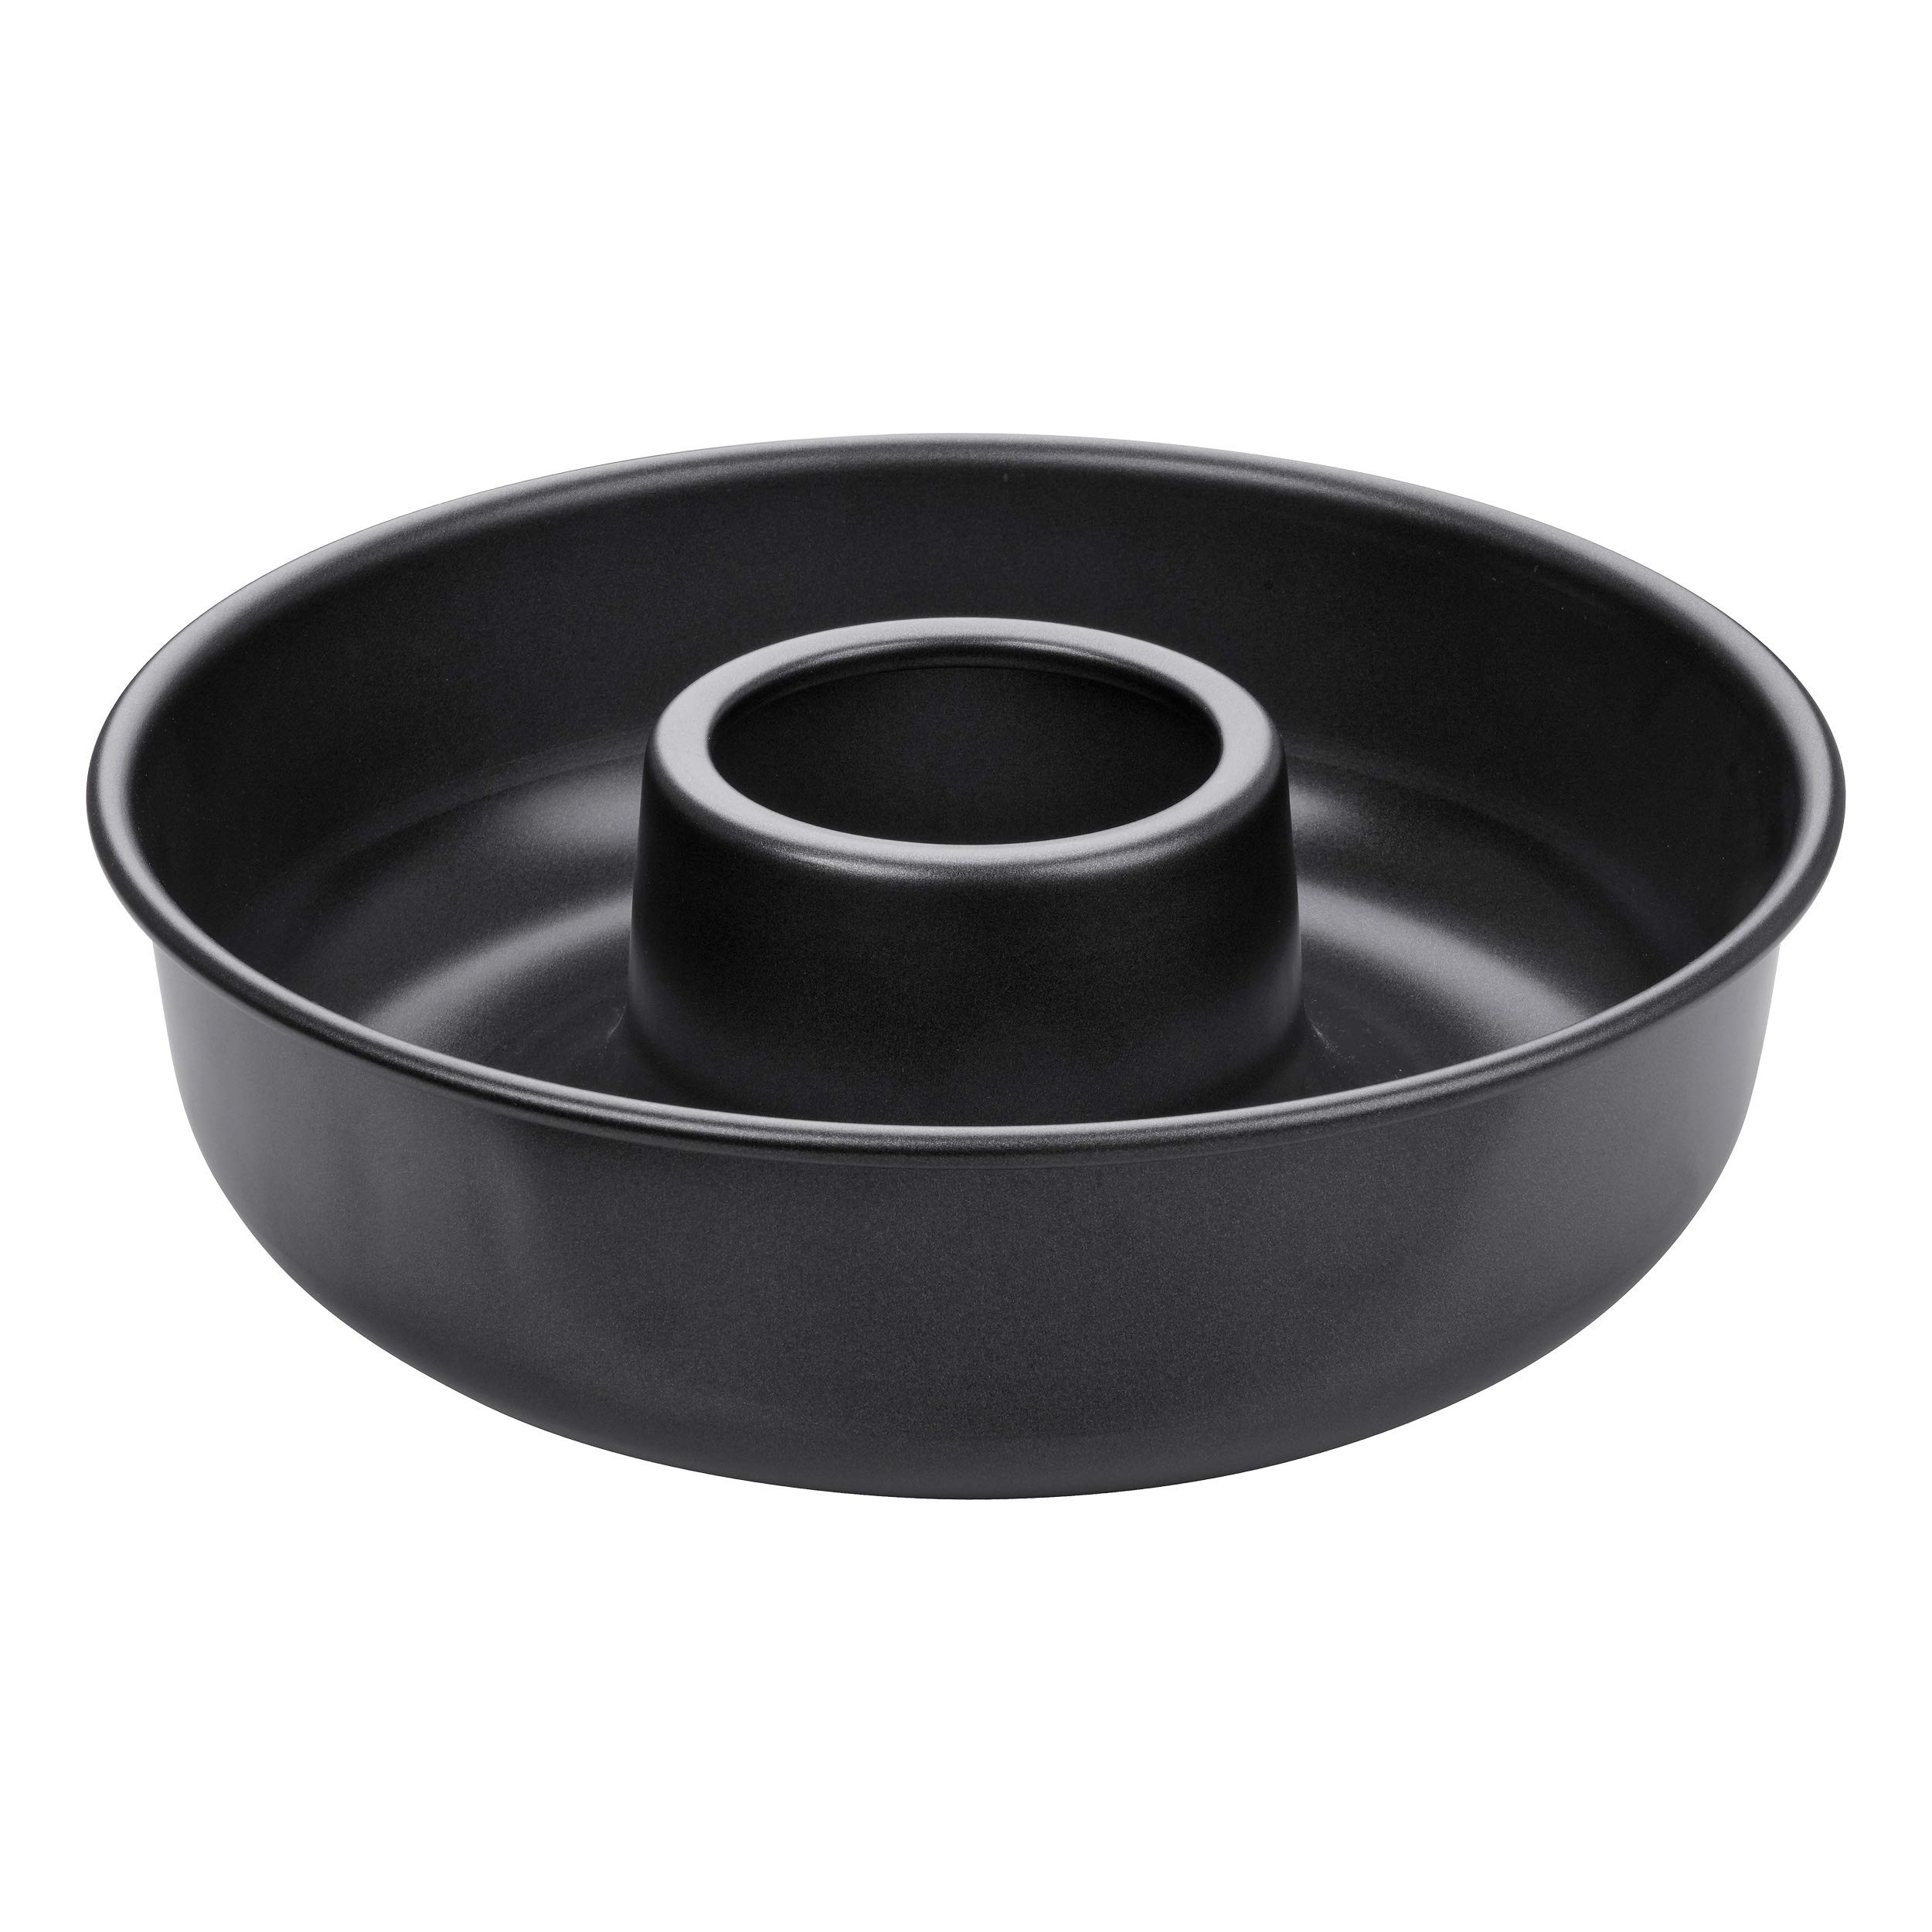 Zenker 3990 Kranzform 28 cm aus der Serie Pure, runde Backform für leckere Kuchen, Frankfurter Kranz (Farbe: schwarz), Menge: 1 Stück